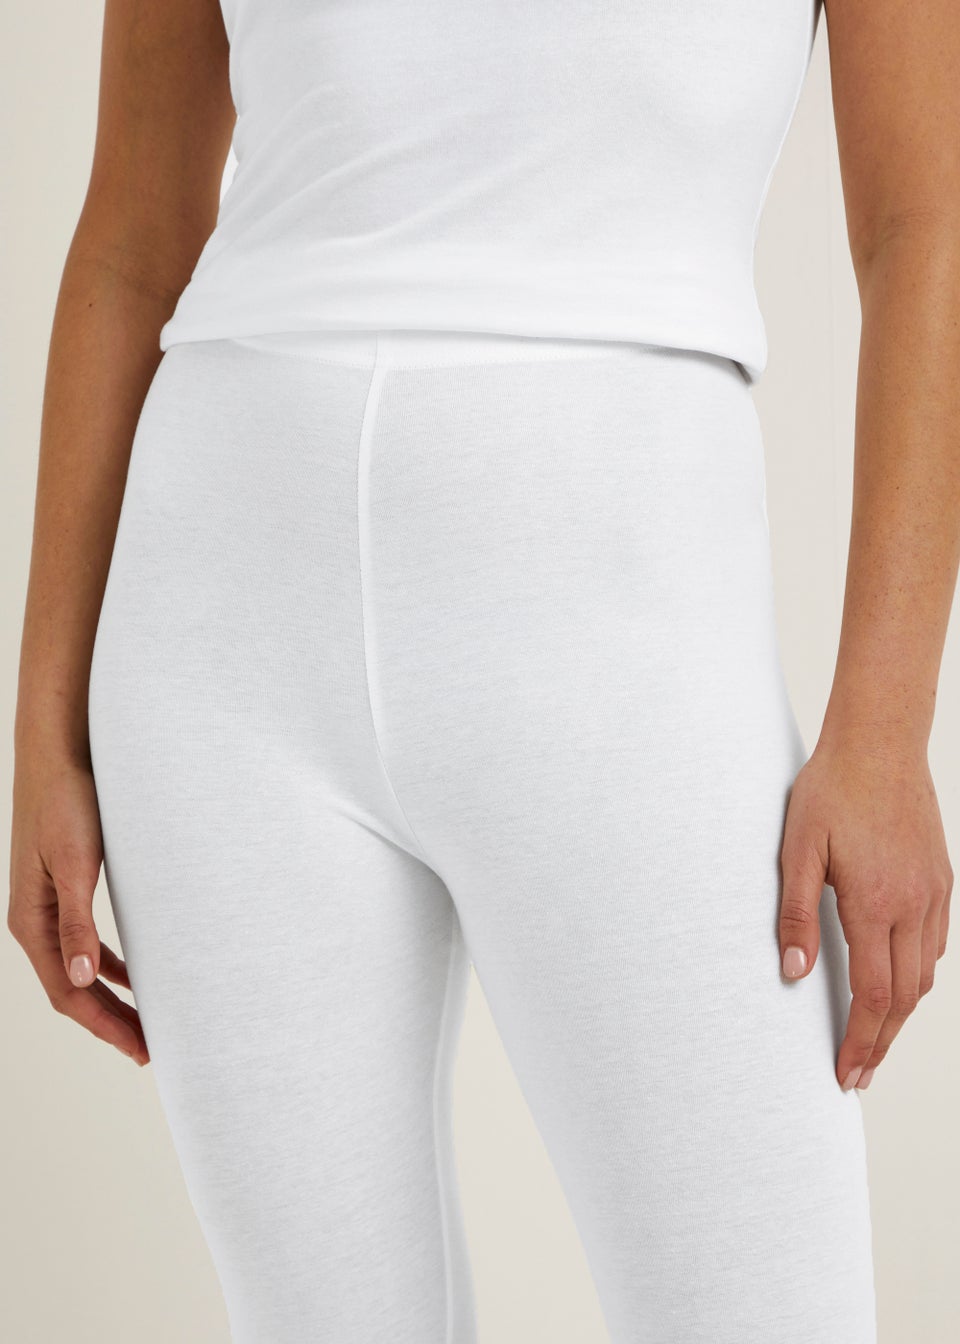 Shop White Leggings | Women's White Bottoms | Ryderwear US-nextbuild.com.vn